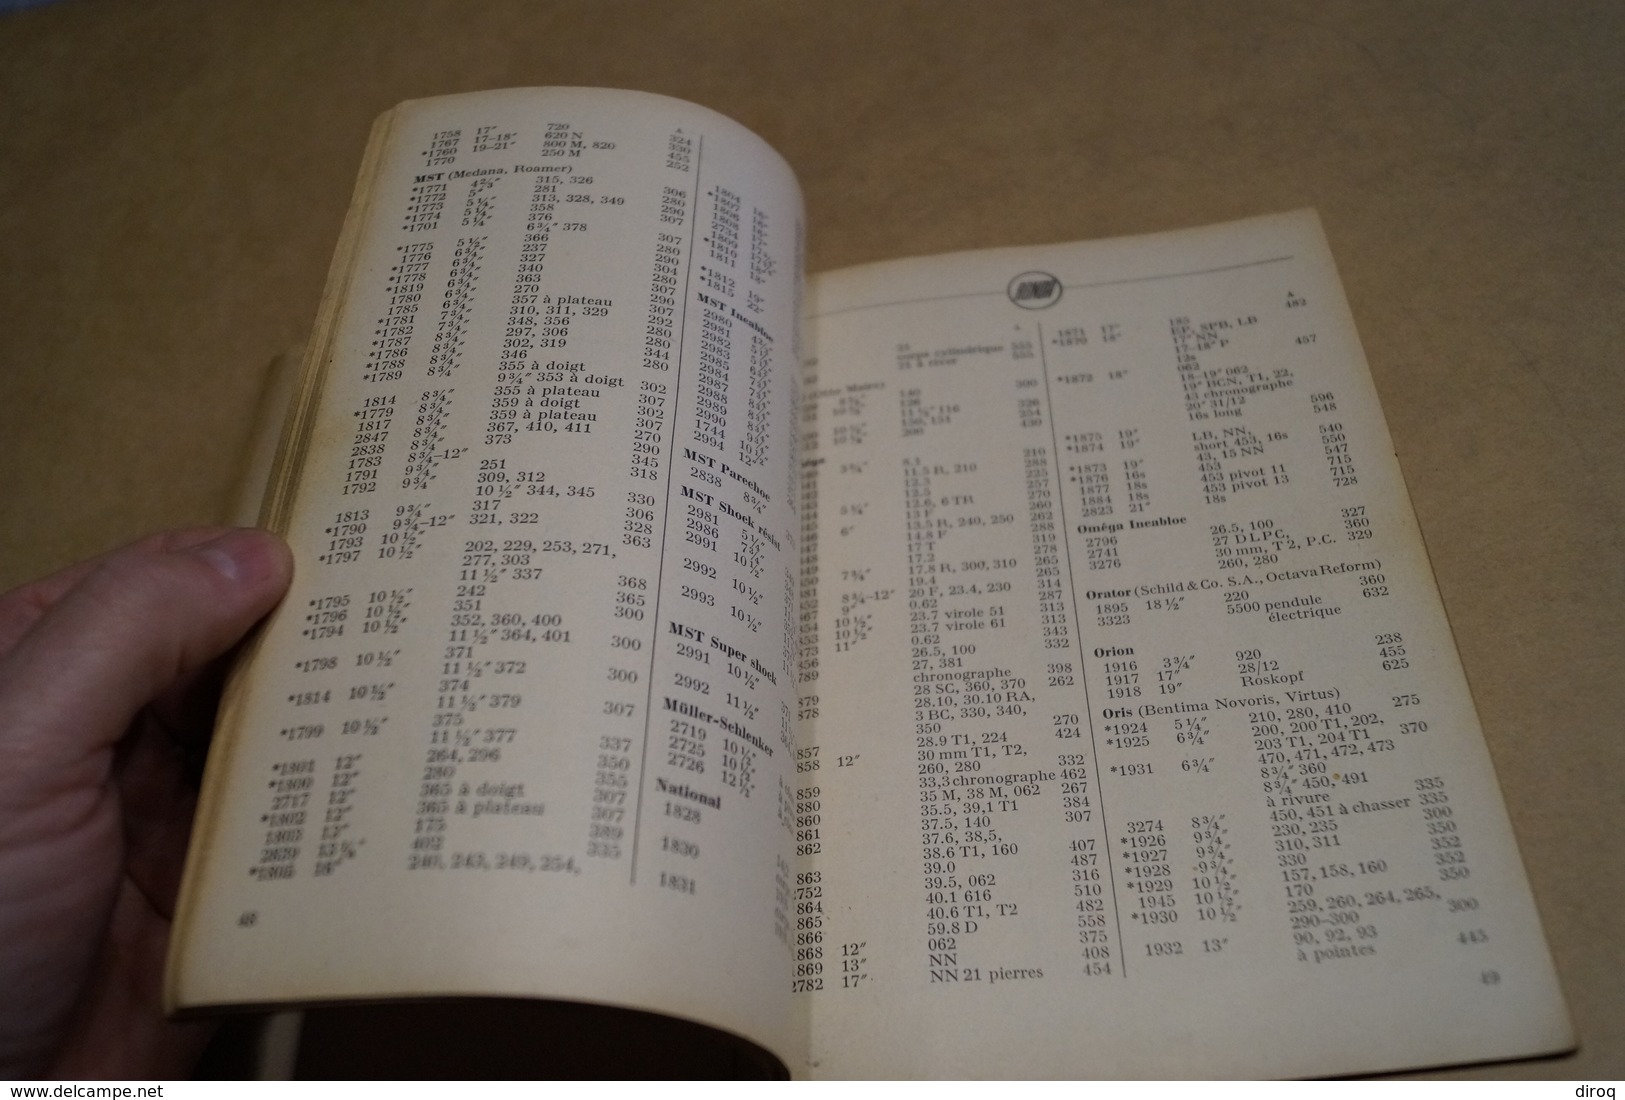 RARE ancien catalogue d'Horlogerie,Ronda 1951,complet 90 pages,21 Cm. sur 15 Cm.